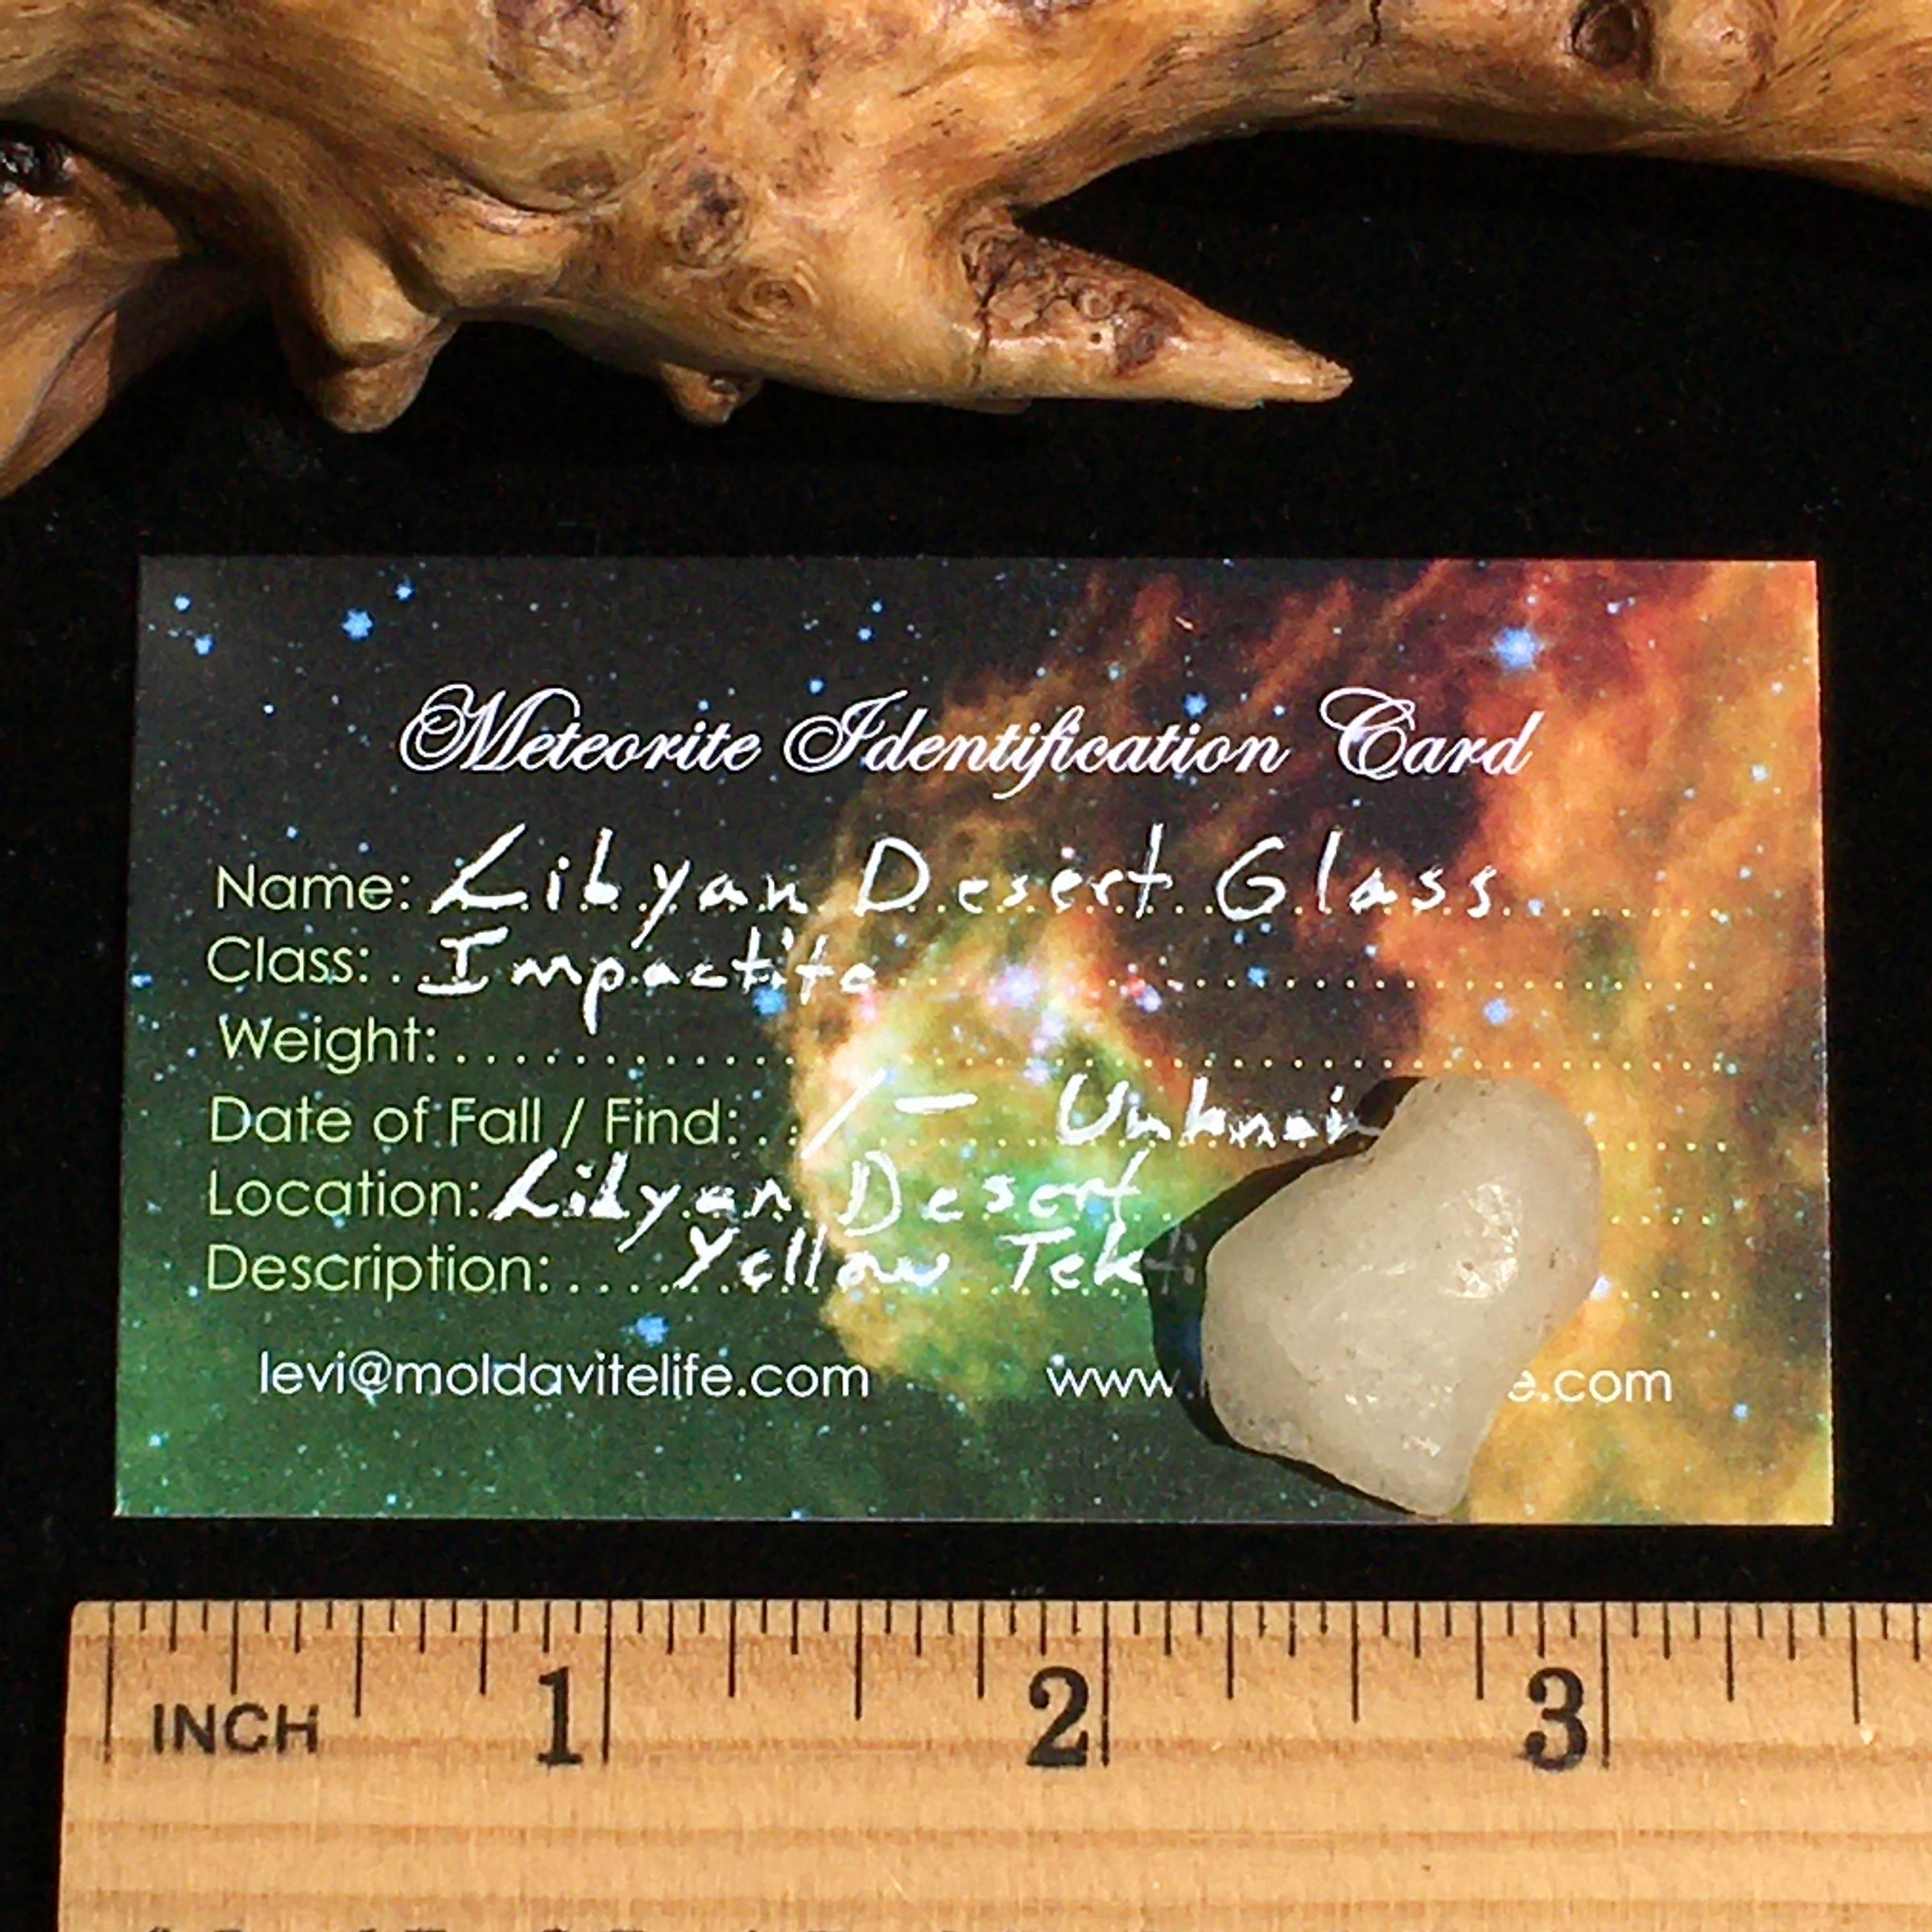 Libyan Desert Glass Tektite 3.6 grams-Moldavite Life